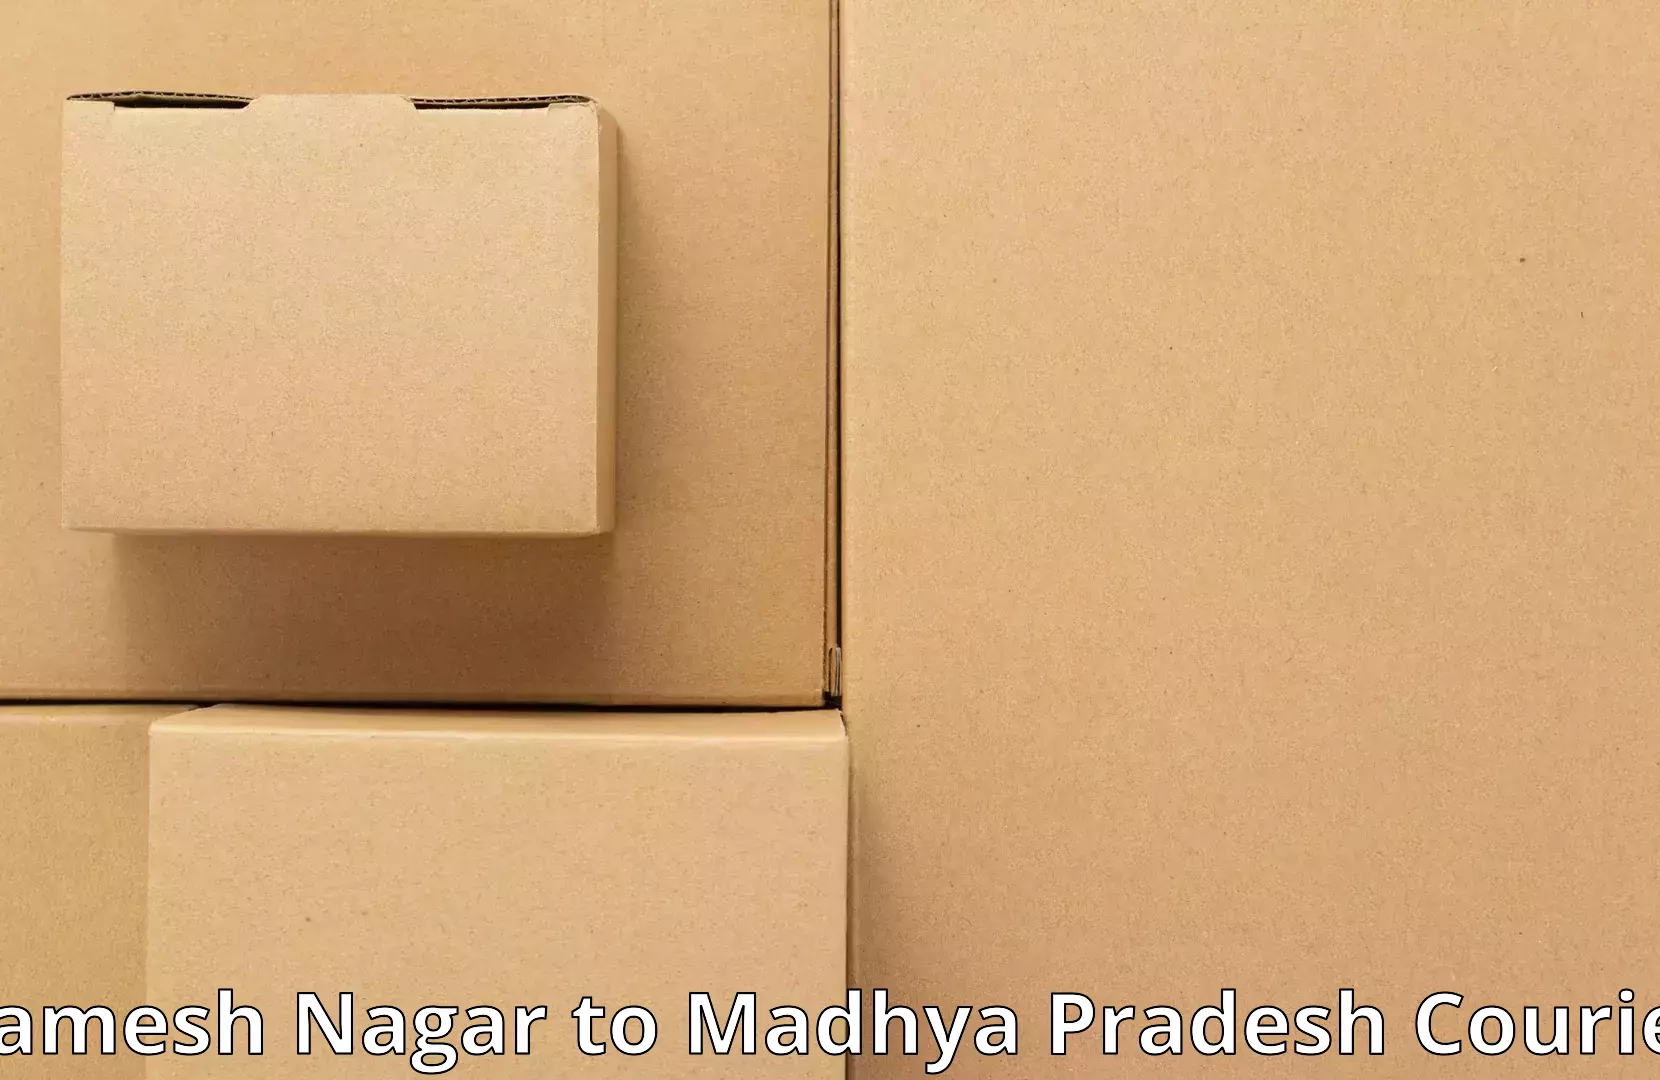 Furniture moving assistance in Ramesh Nagar to Budaganj